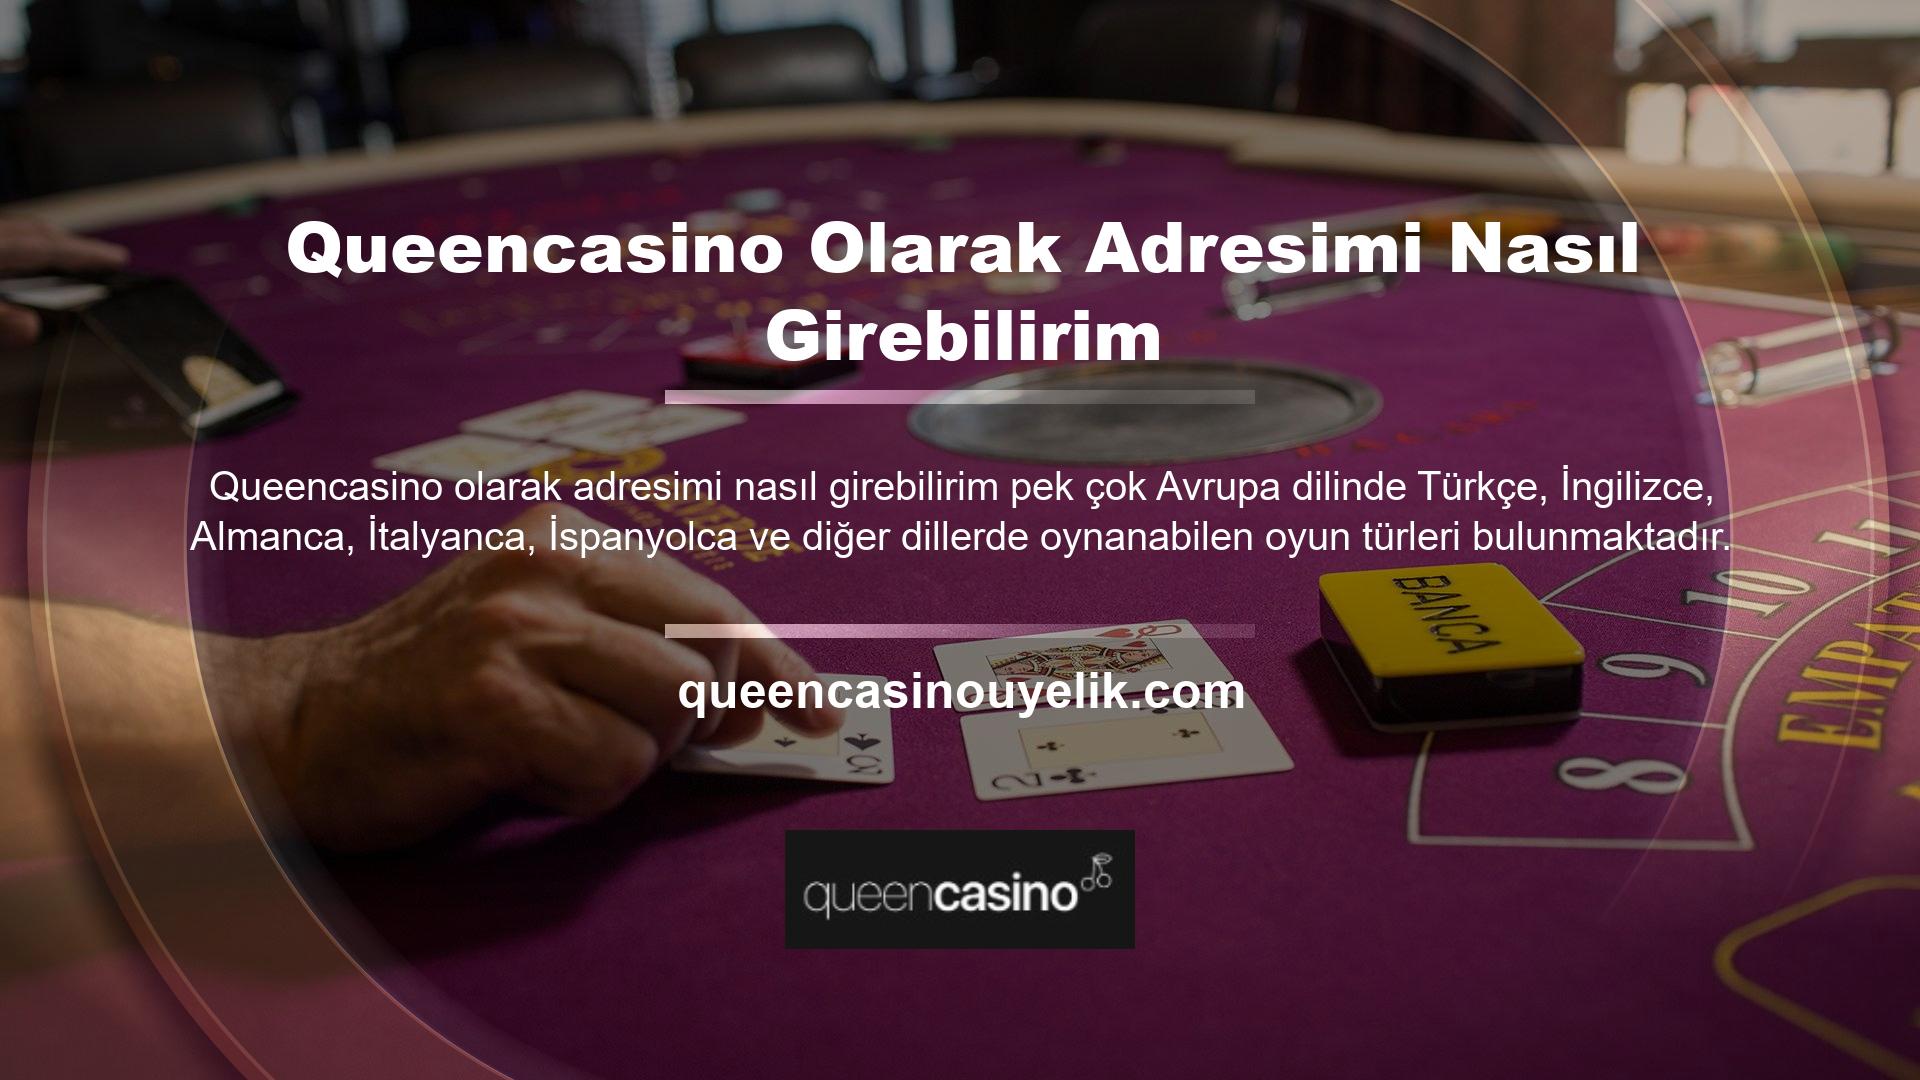 Queencasino web sitesinin yeni bir giriş adresine sahip sanal ve canlı oyunları, kupaların atfedilmesi yoluyla para kazanma özelliği olmasa bile oyunlardan para kazanmaya uygundur